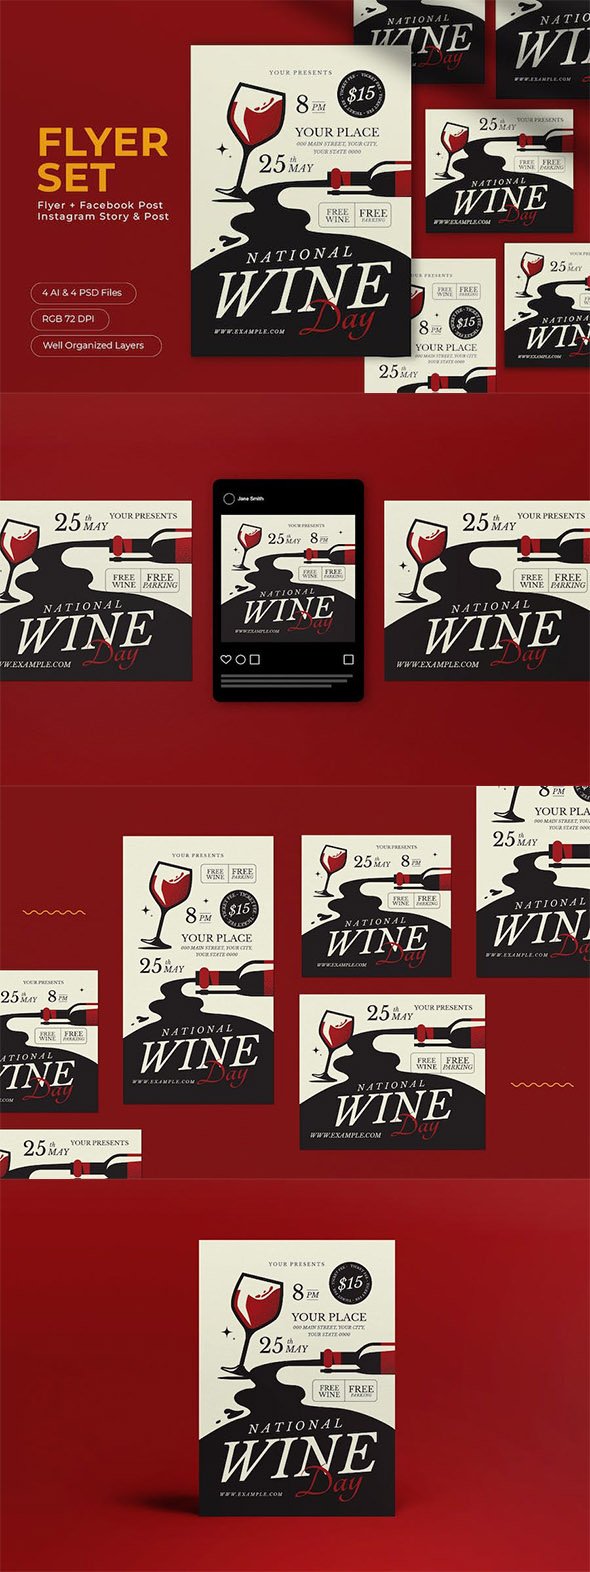 Black Flat Design National Wine Day Flyer Set - L87A6N7